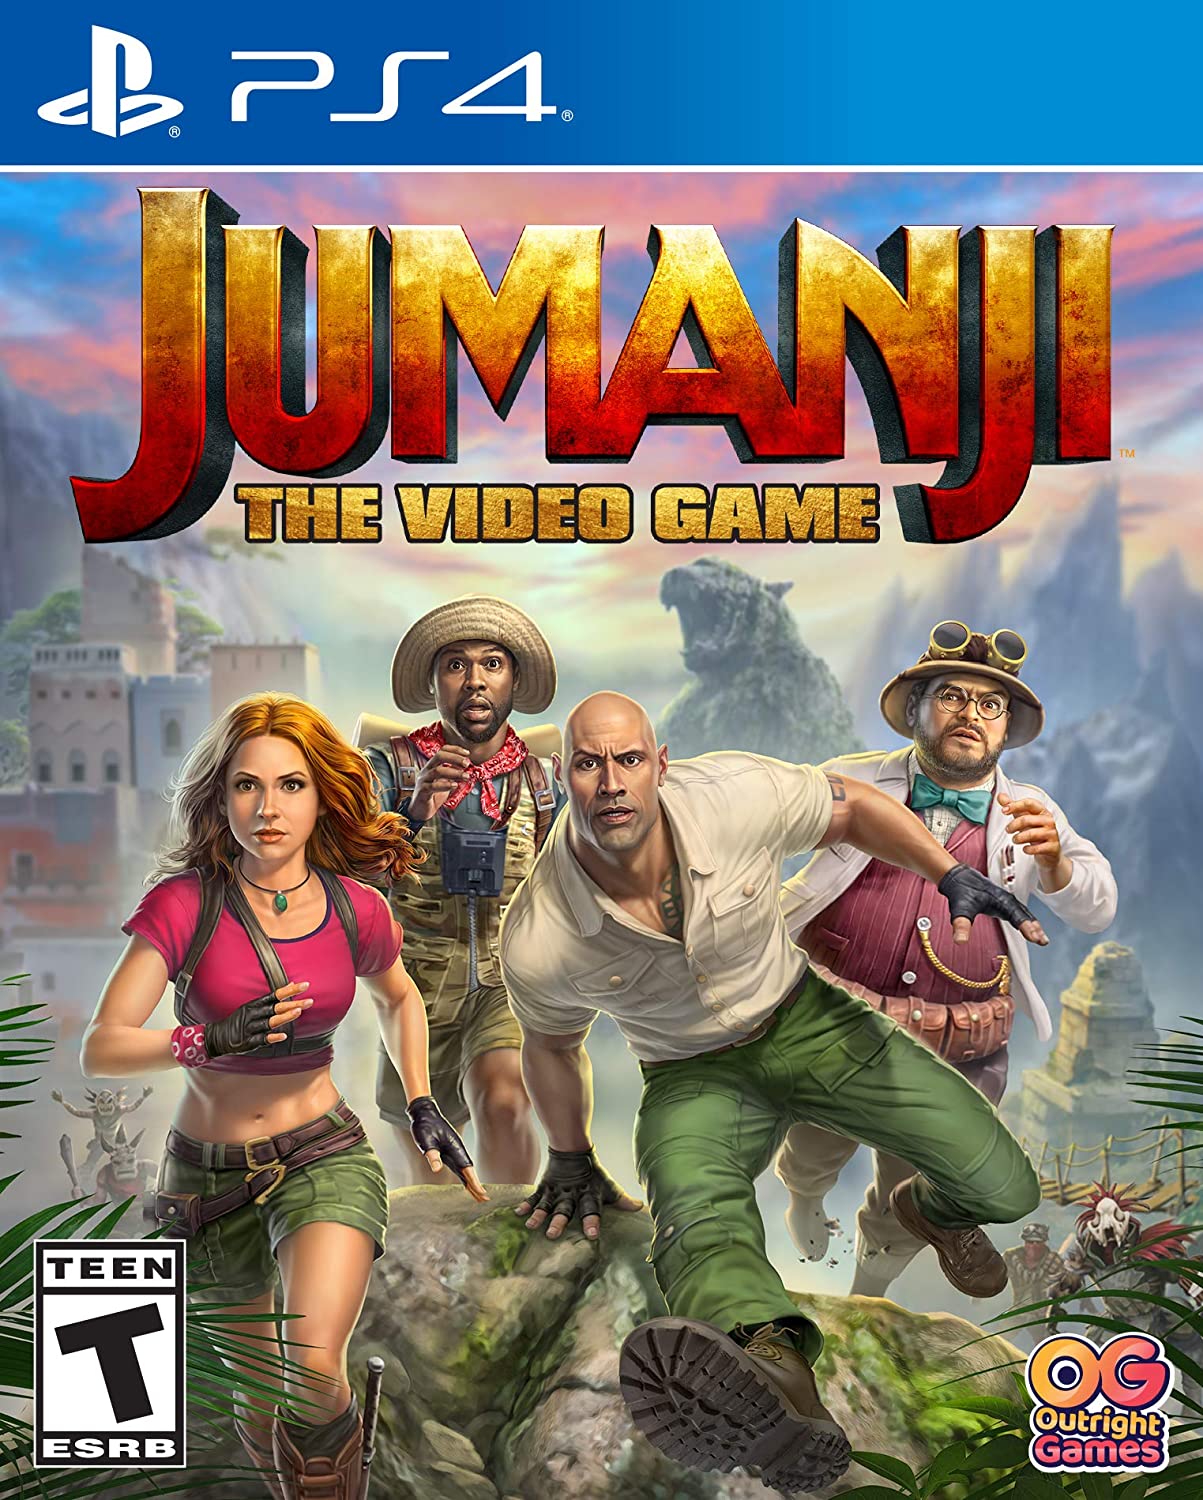 Jumanji (Xbox One)